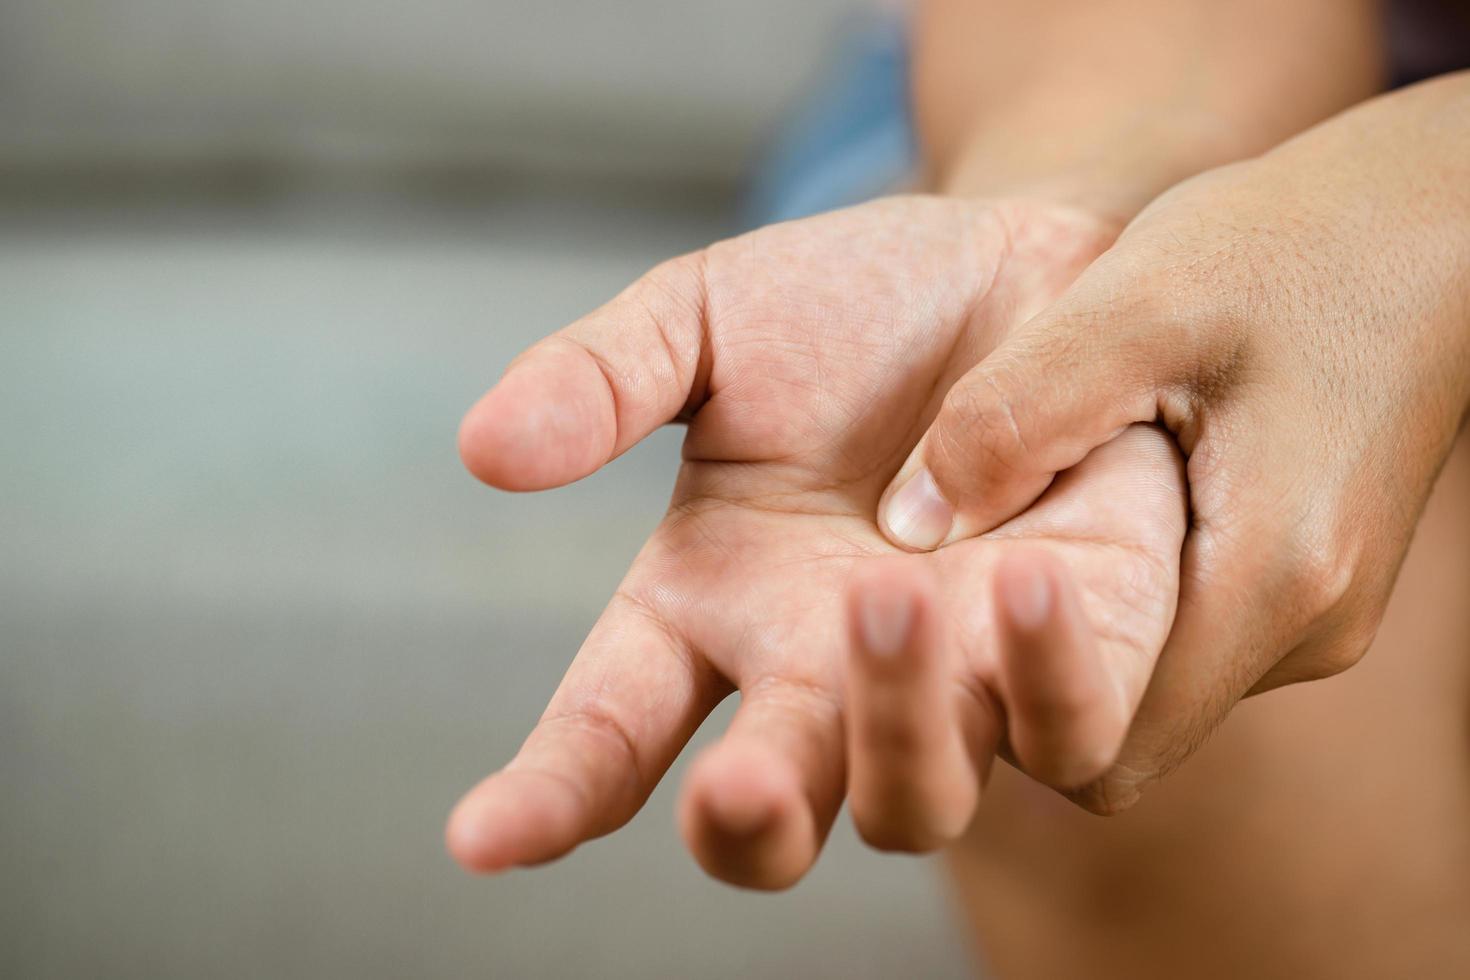 artrose is een gemeenschappelijk oorzaak van hand- gewricht pijn in de ouderen. en die met een familie geschiedenis van degeneratief knokkels foto